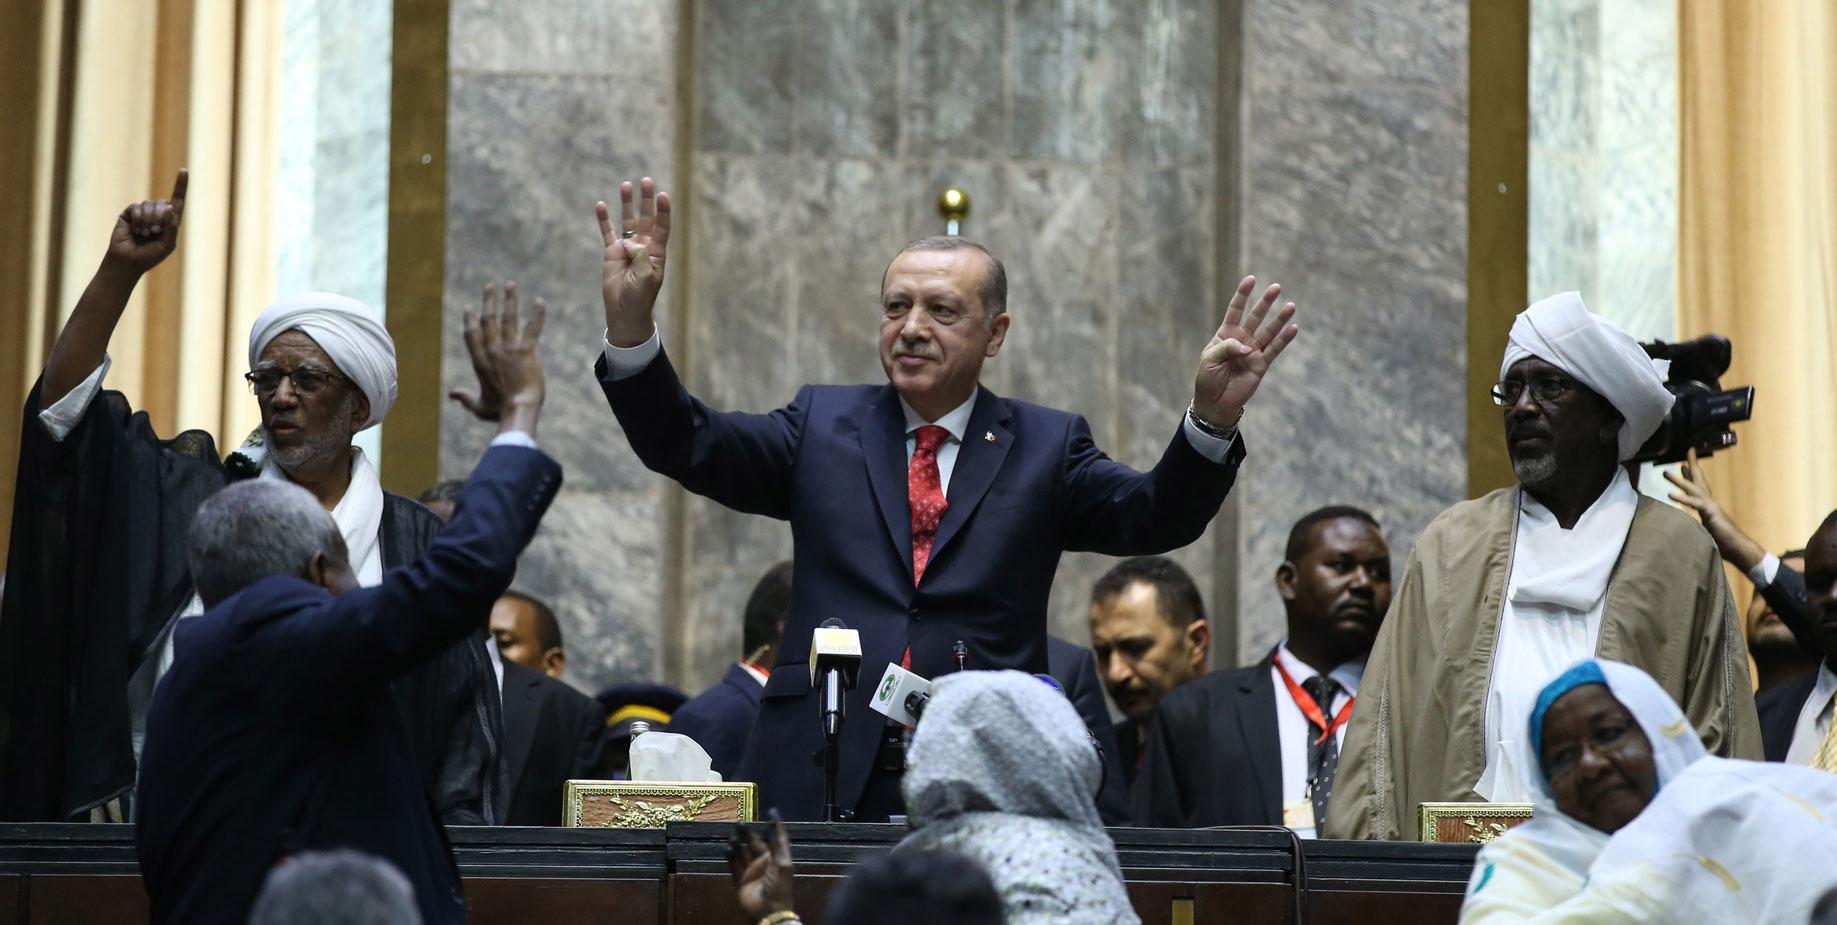 الرئيس التركي رجب طيب اردوغان خلال اخر زيارة له للخرطوم